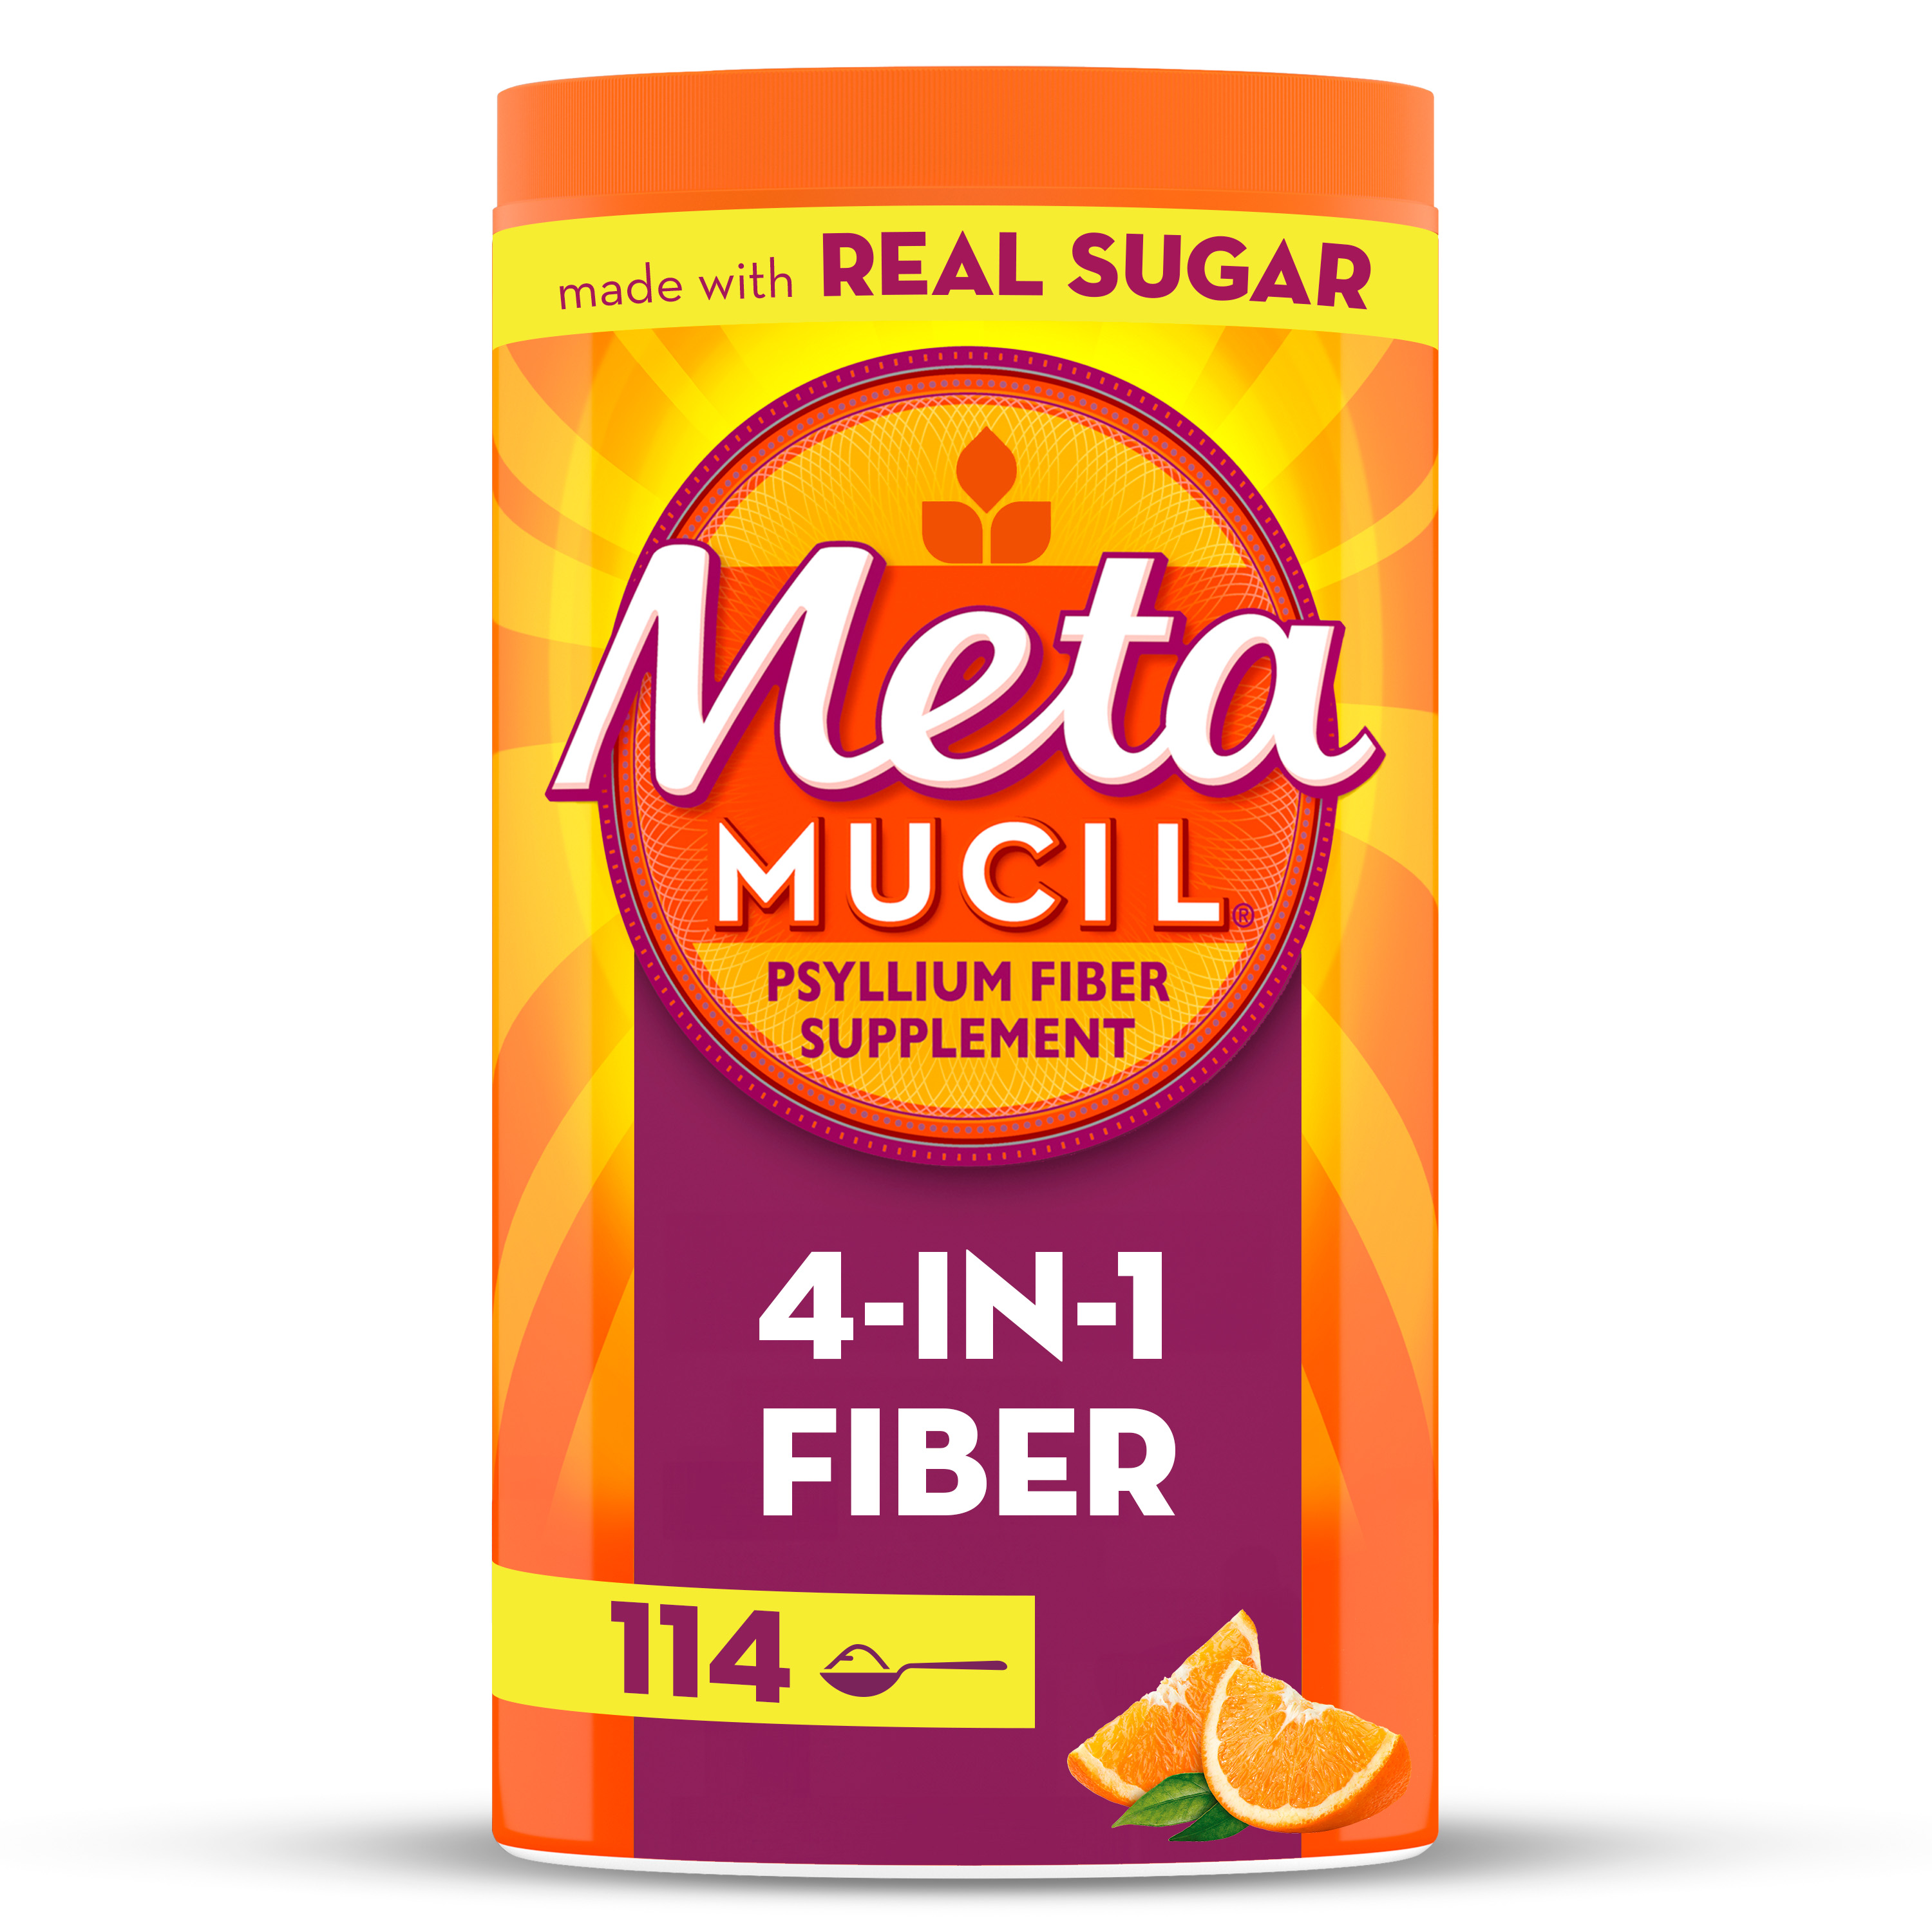 Metamucil Psyllium Husk Fiber Supplement for Digestive Health, Real Sugar, Orange, 114 Servings - image 1 of 8